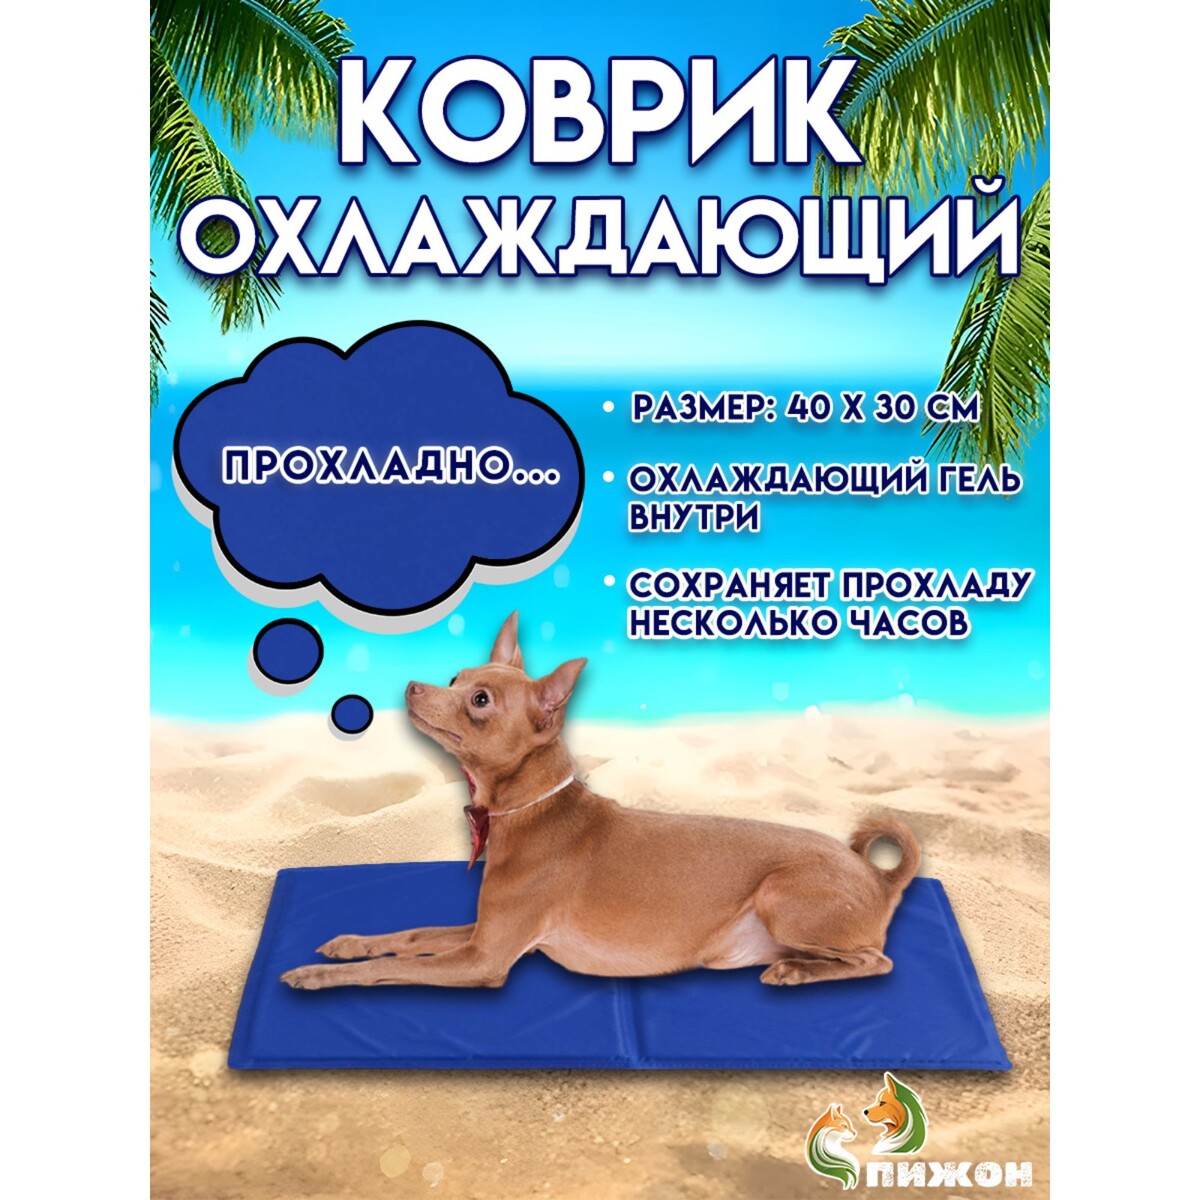 Коврик охлаждающий (гель+губка), 40 х 30 см, синий коврик для йоги inex yoga mat in rp ym35 bl 35 rp 170x60x0 35 синий